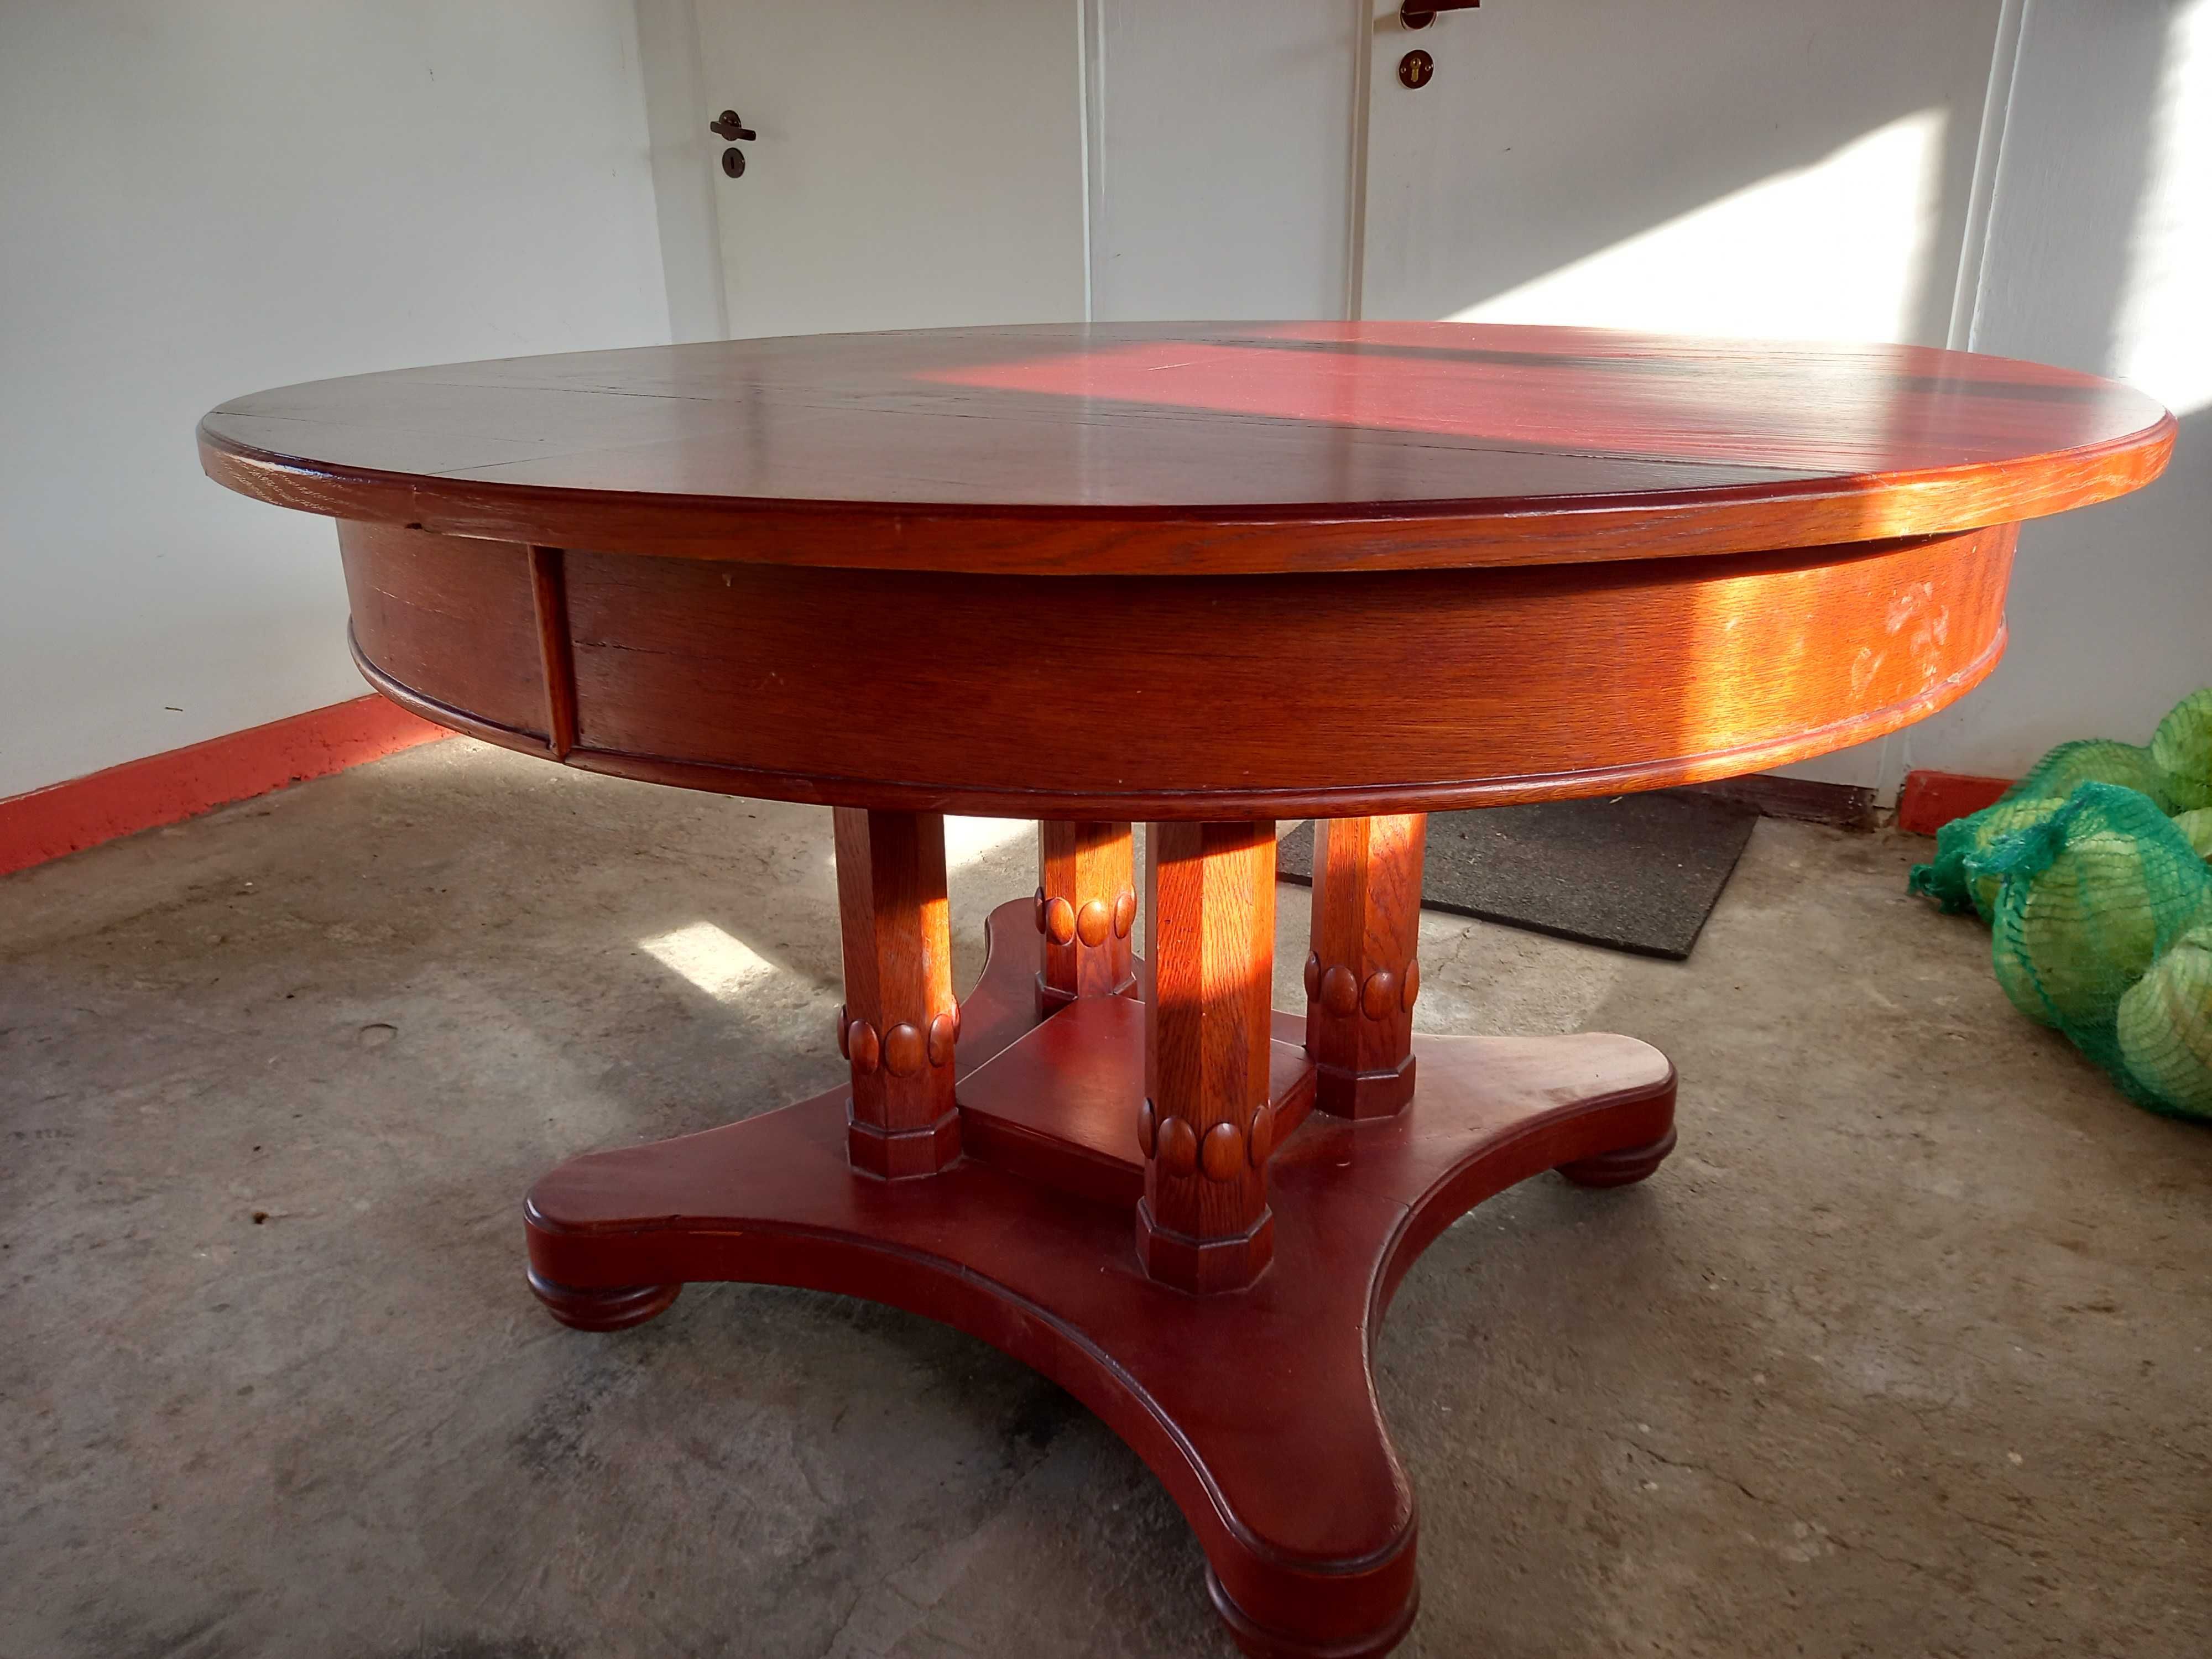 Duży okrągły stół - "okres międzywojenny" styl Biedermeier